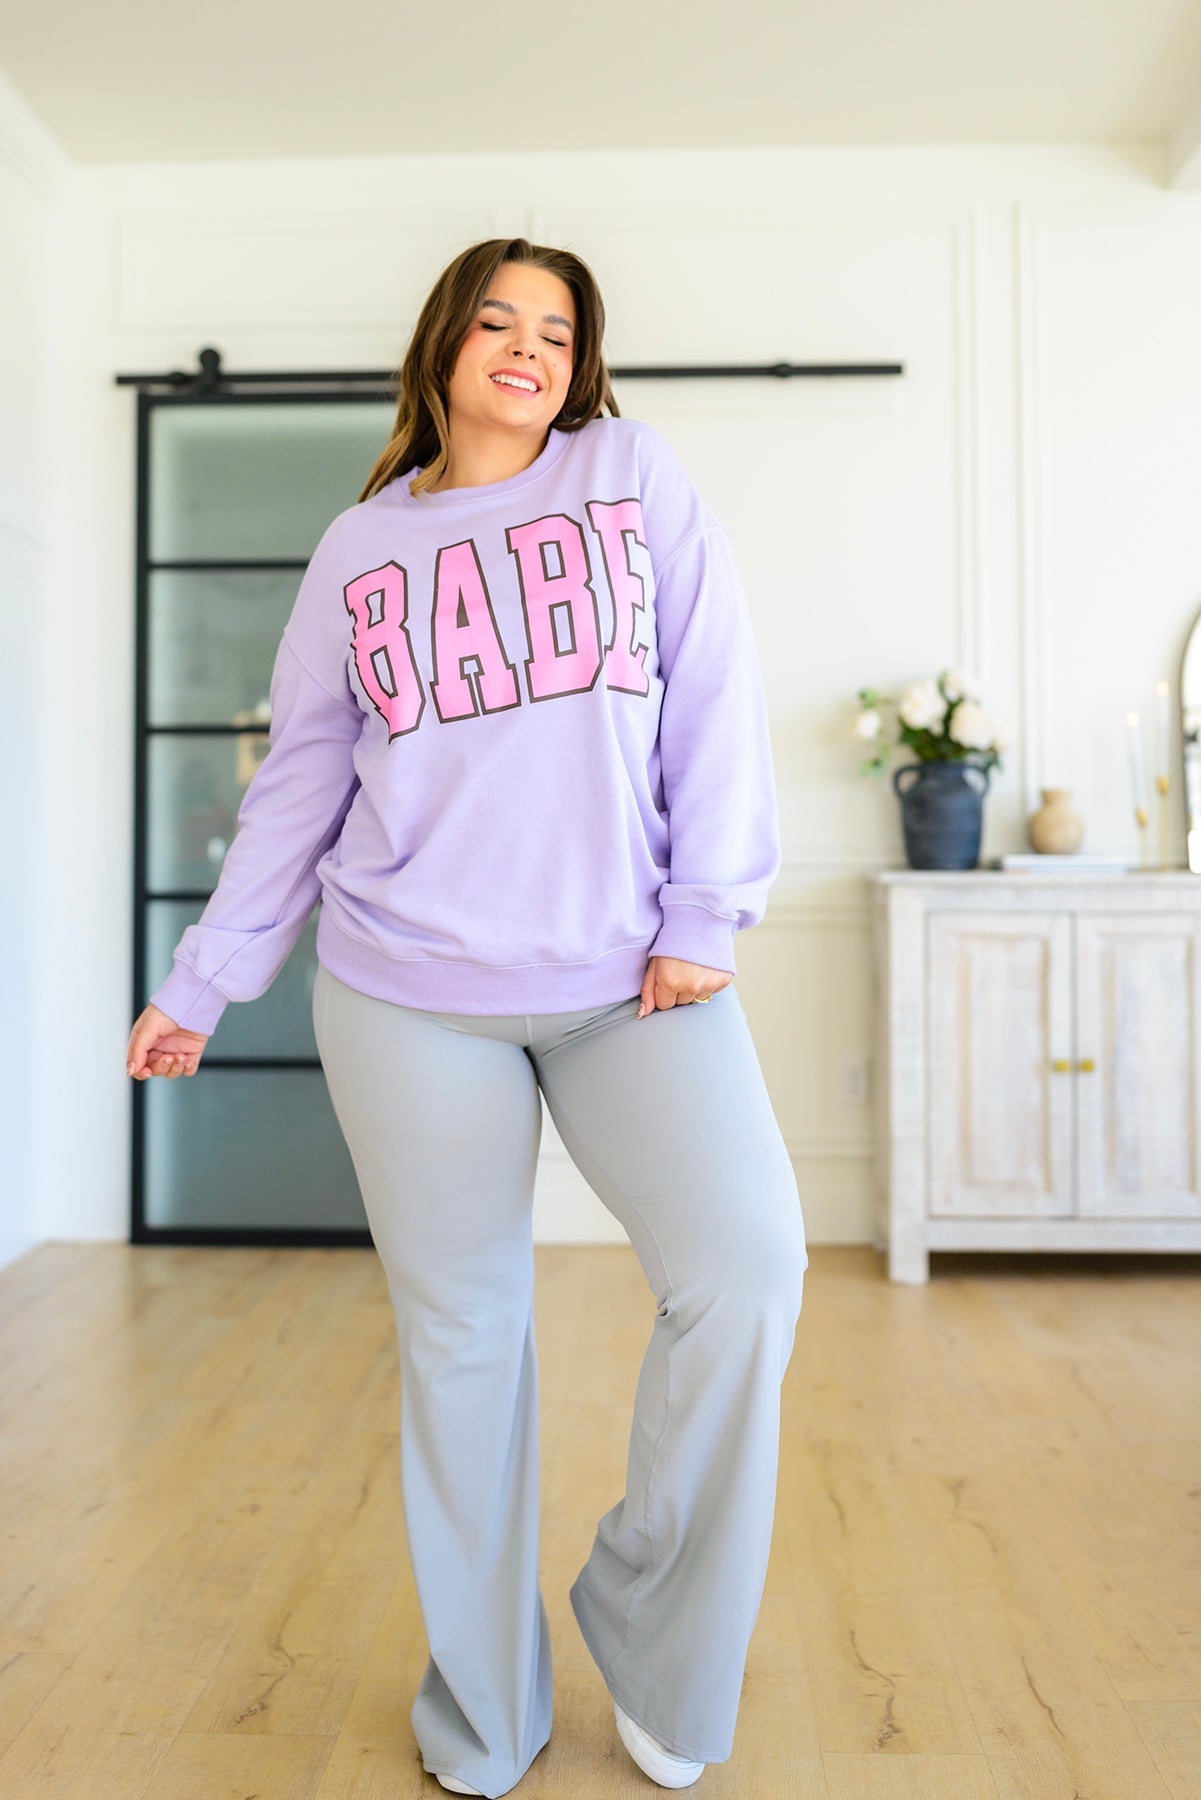 She's a Babe Sweater (Exclusivo en línea) 